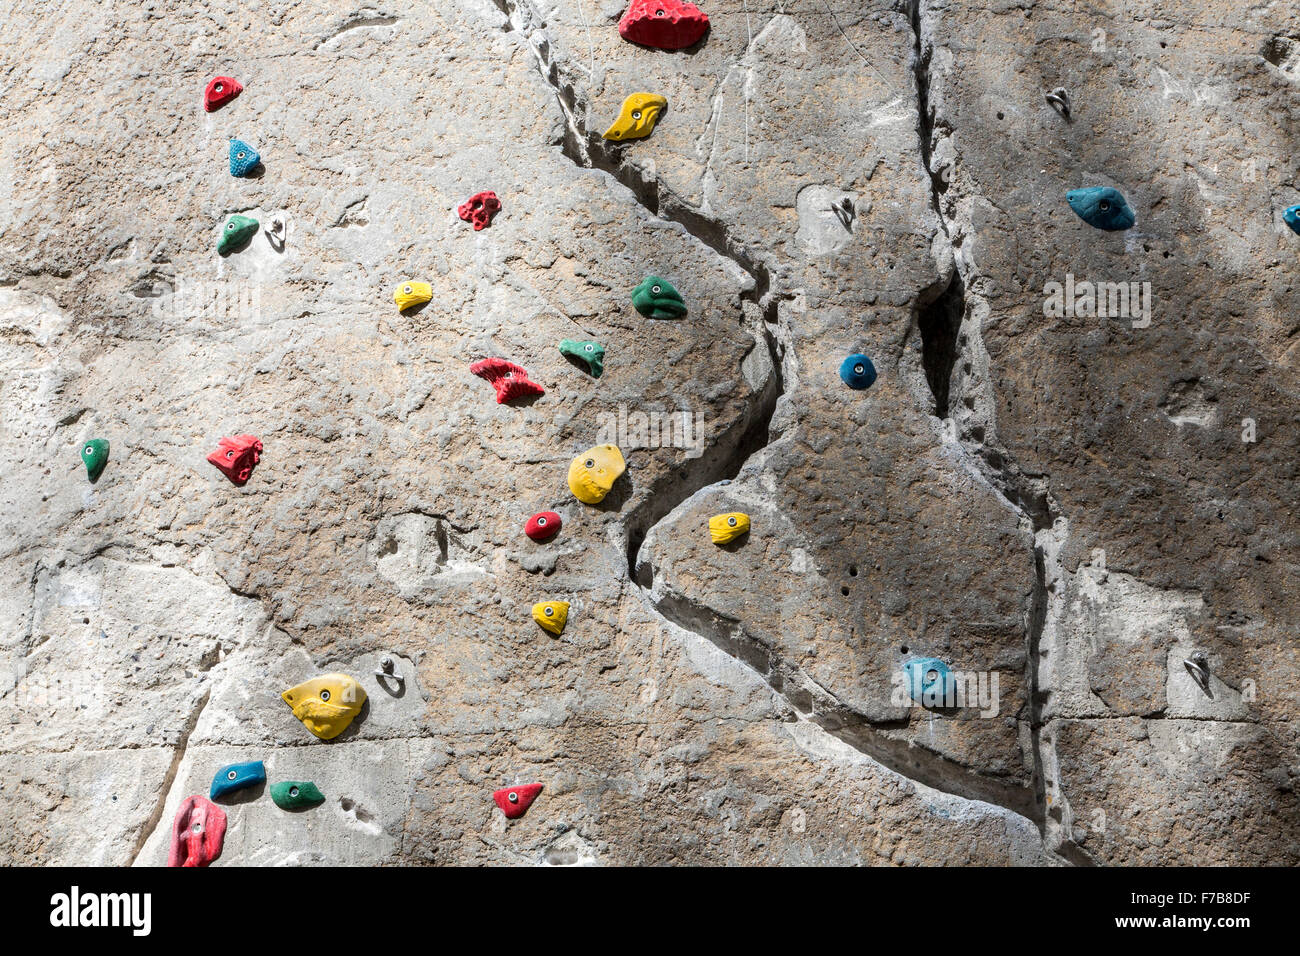 Kletterwand mit Klettergriffe für verschiedene Kletterrouten, Stockfoto